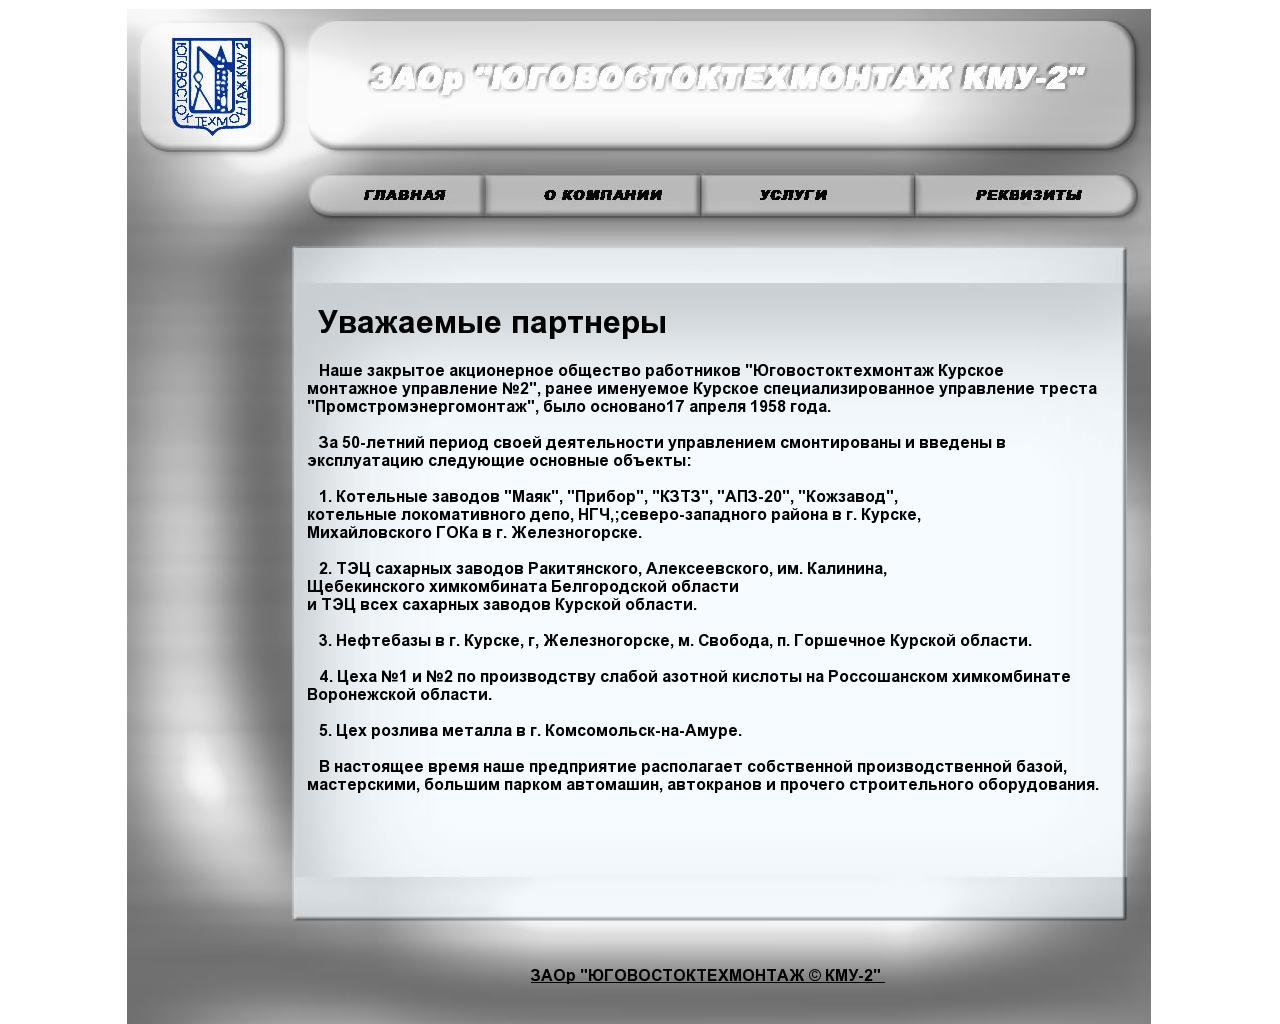 Изображение сайта kmu2.ru в разрешении 1280x1024